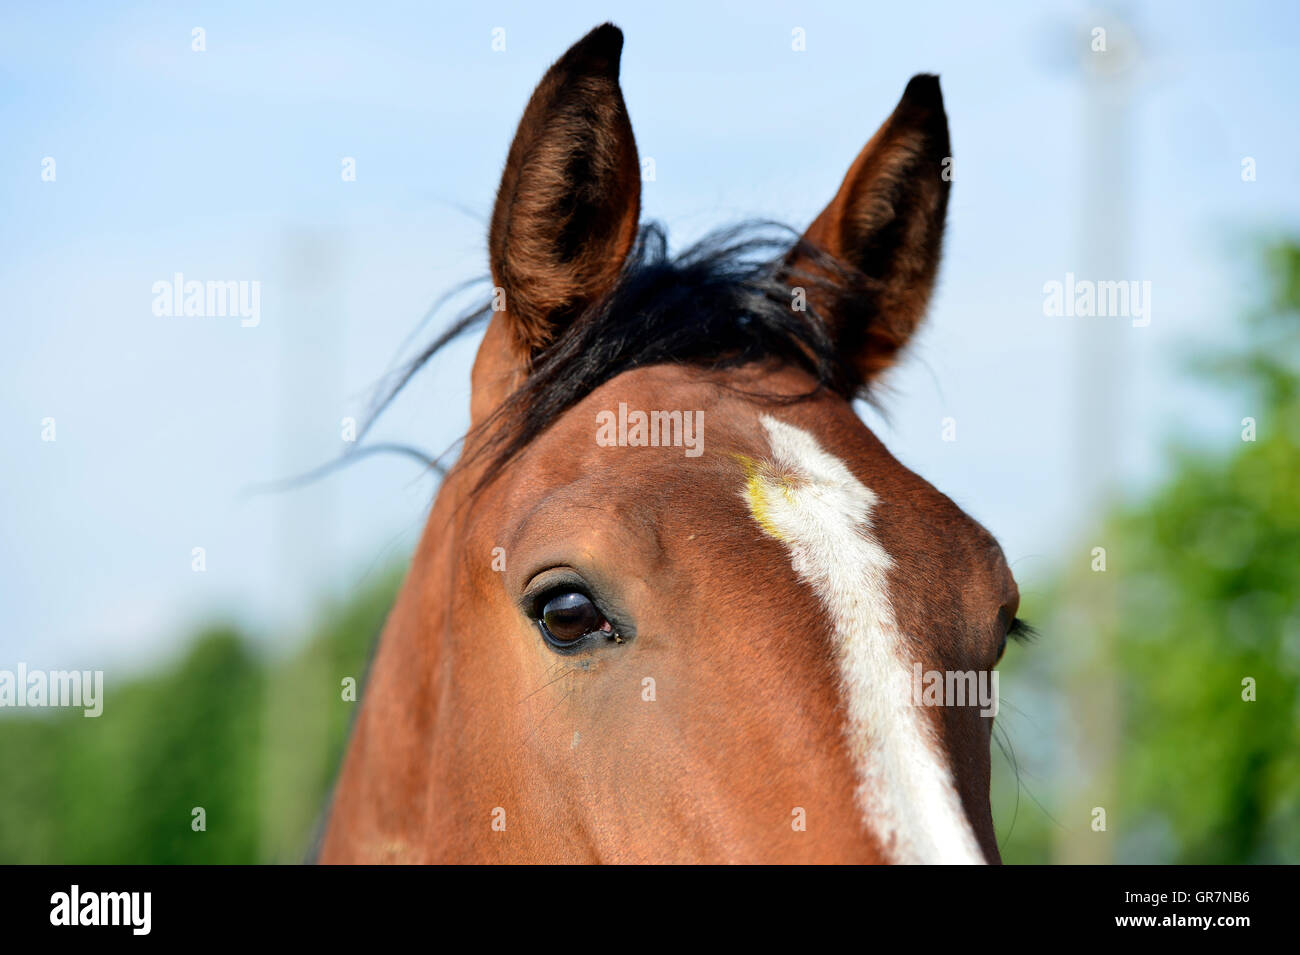 Arabian Horse, Portrait Stock Photo